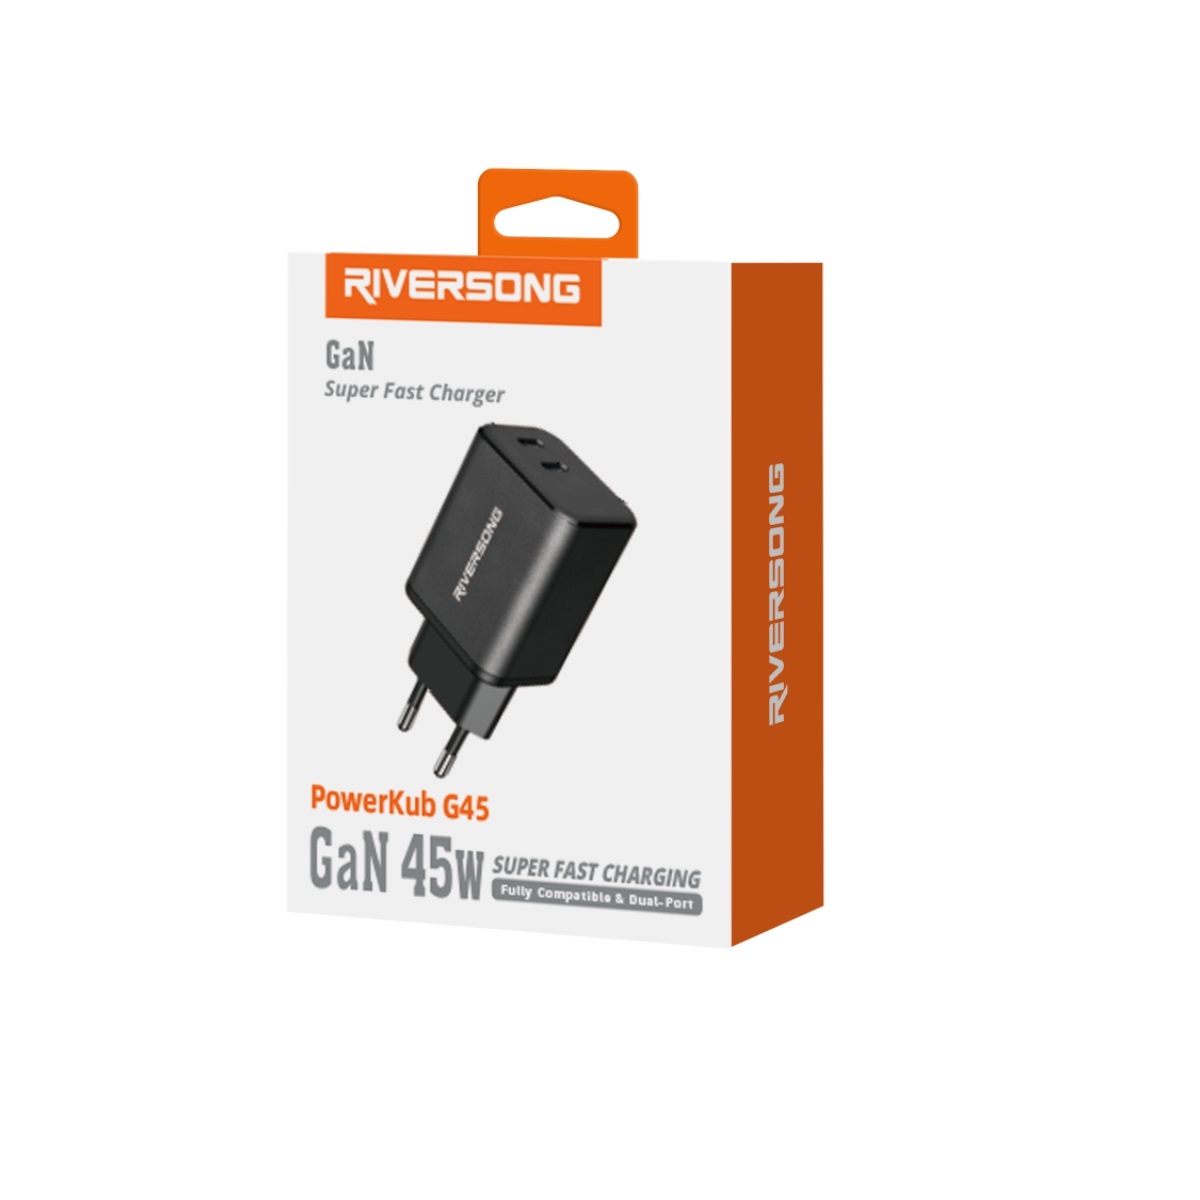 Riversong adowarka sieciowa PowerKub G45 2x USB-C 45W czarna AD95 / 2